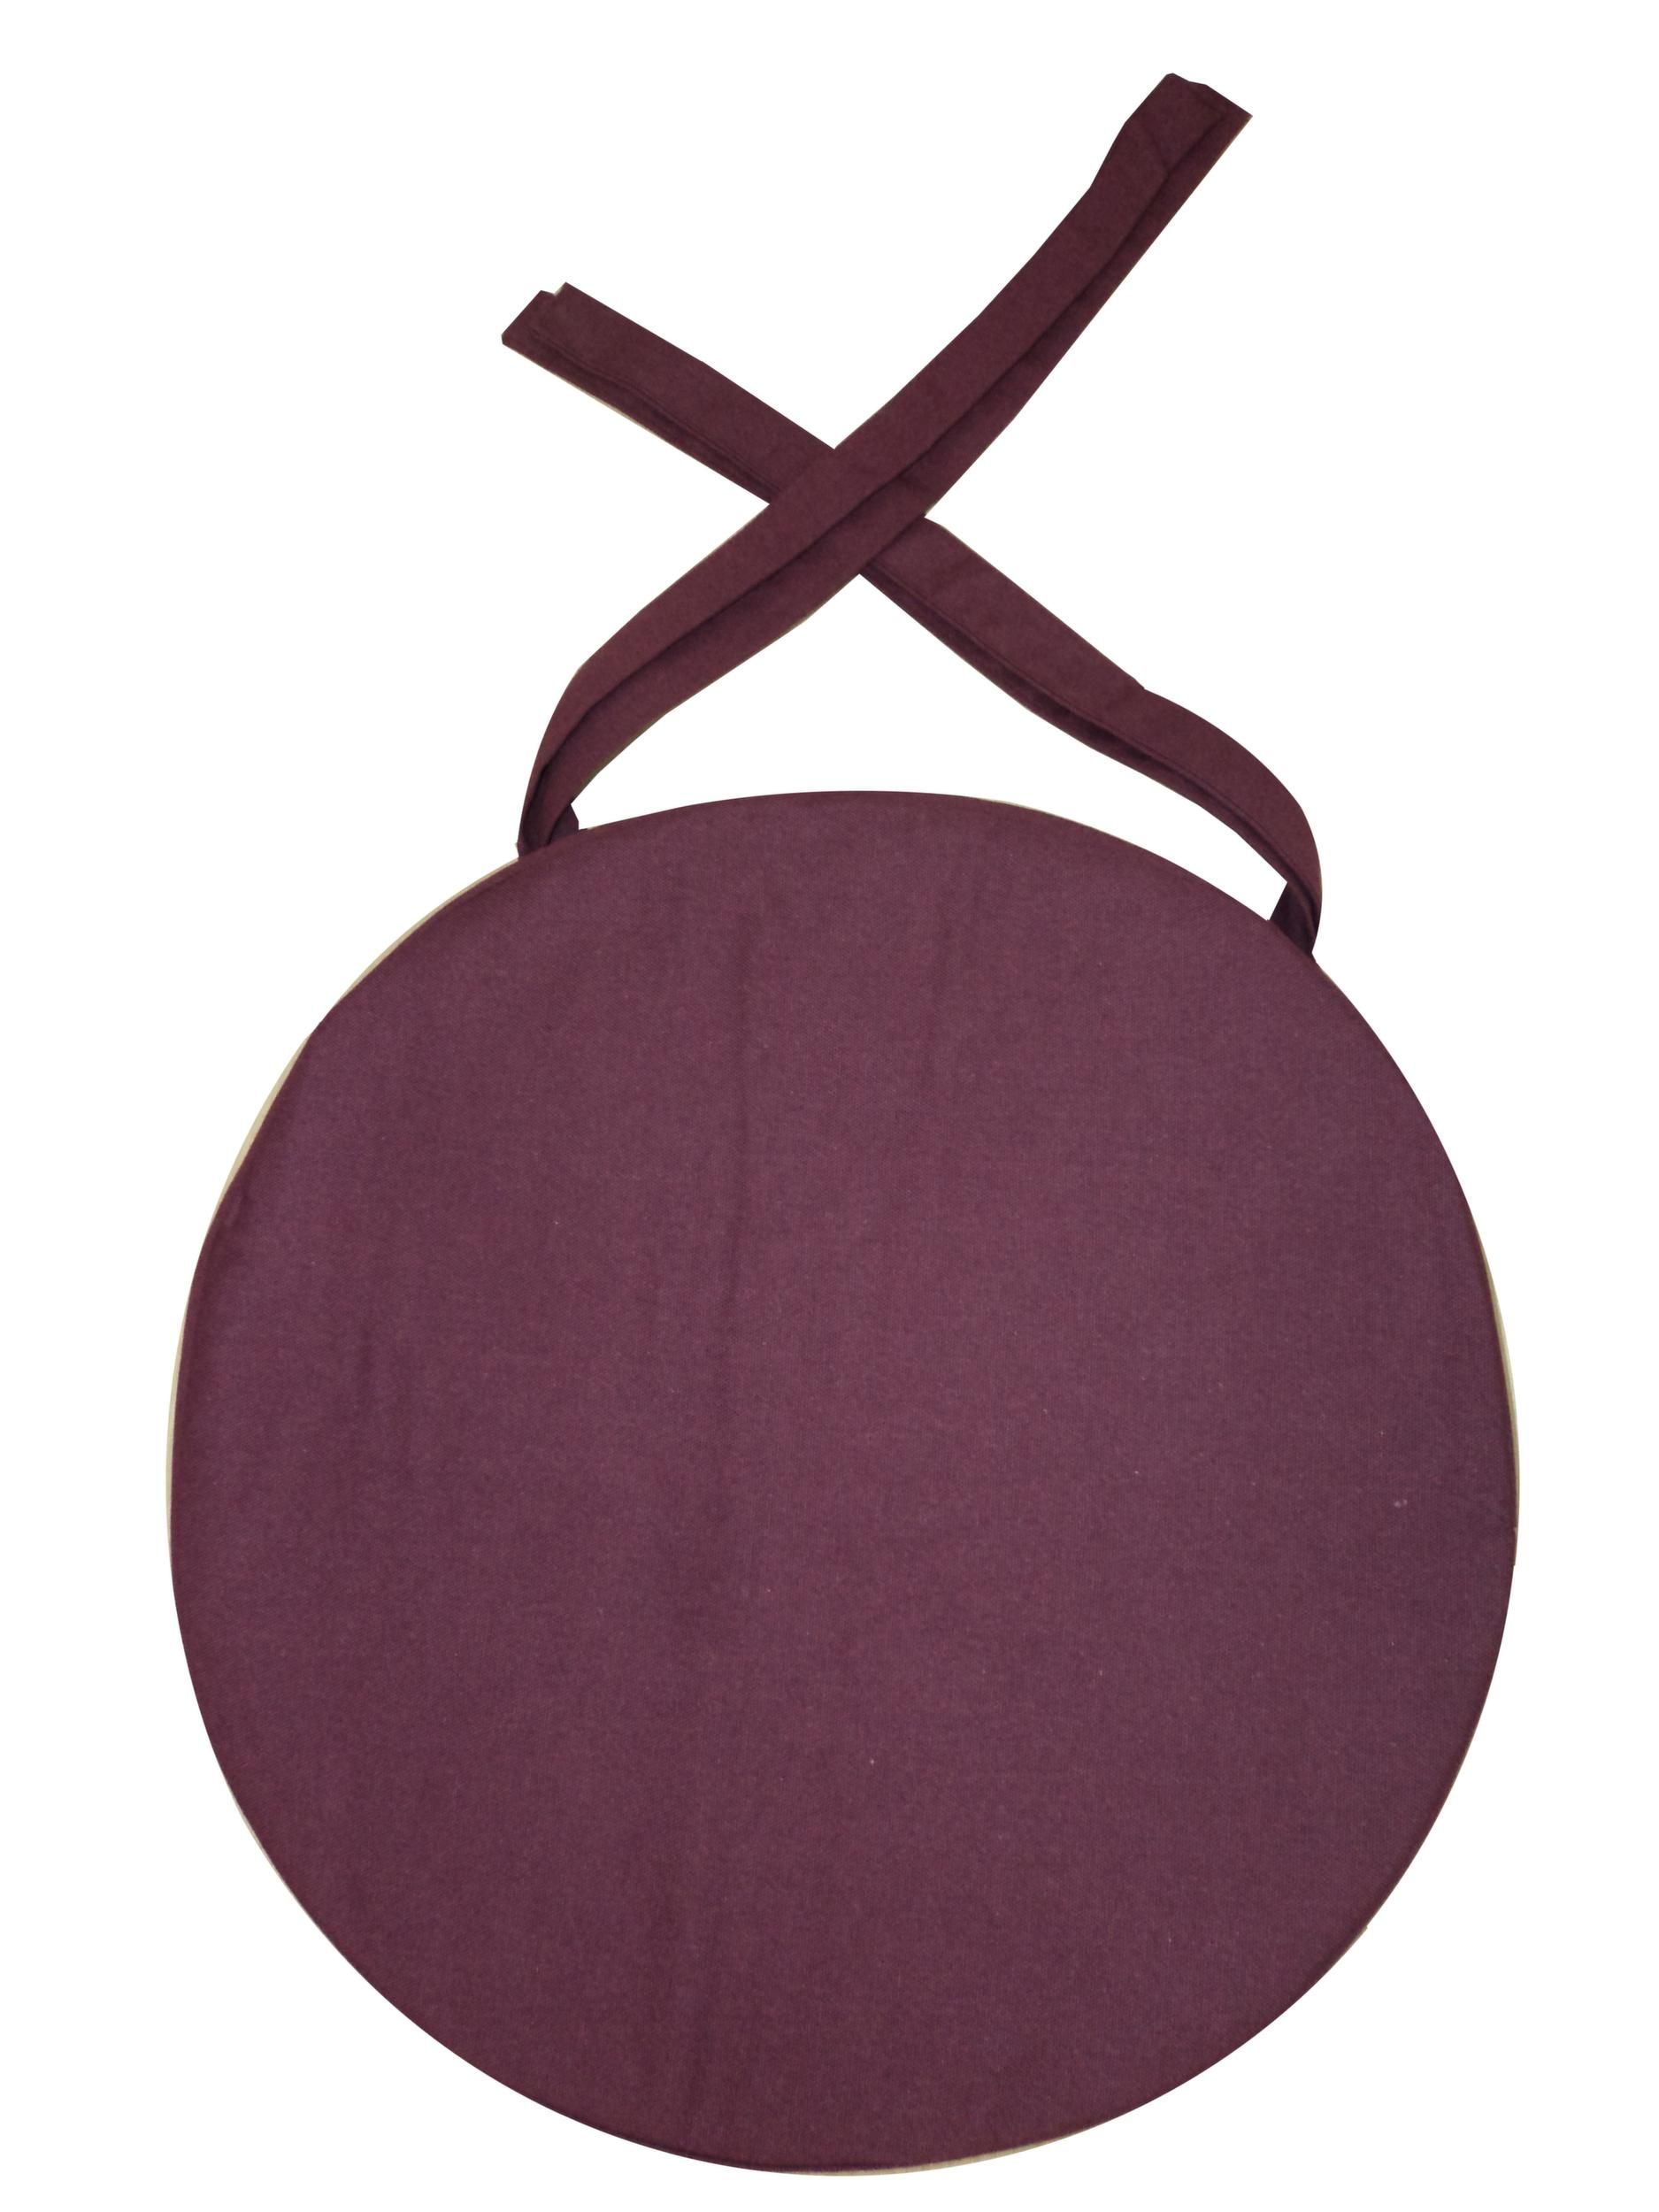 Galette de chaise ronde en coton 40 cm (lot de 6) (aubergine)